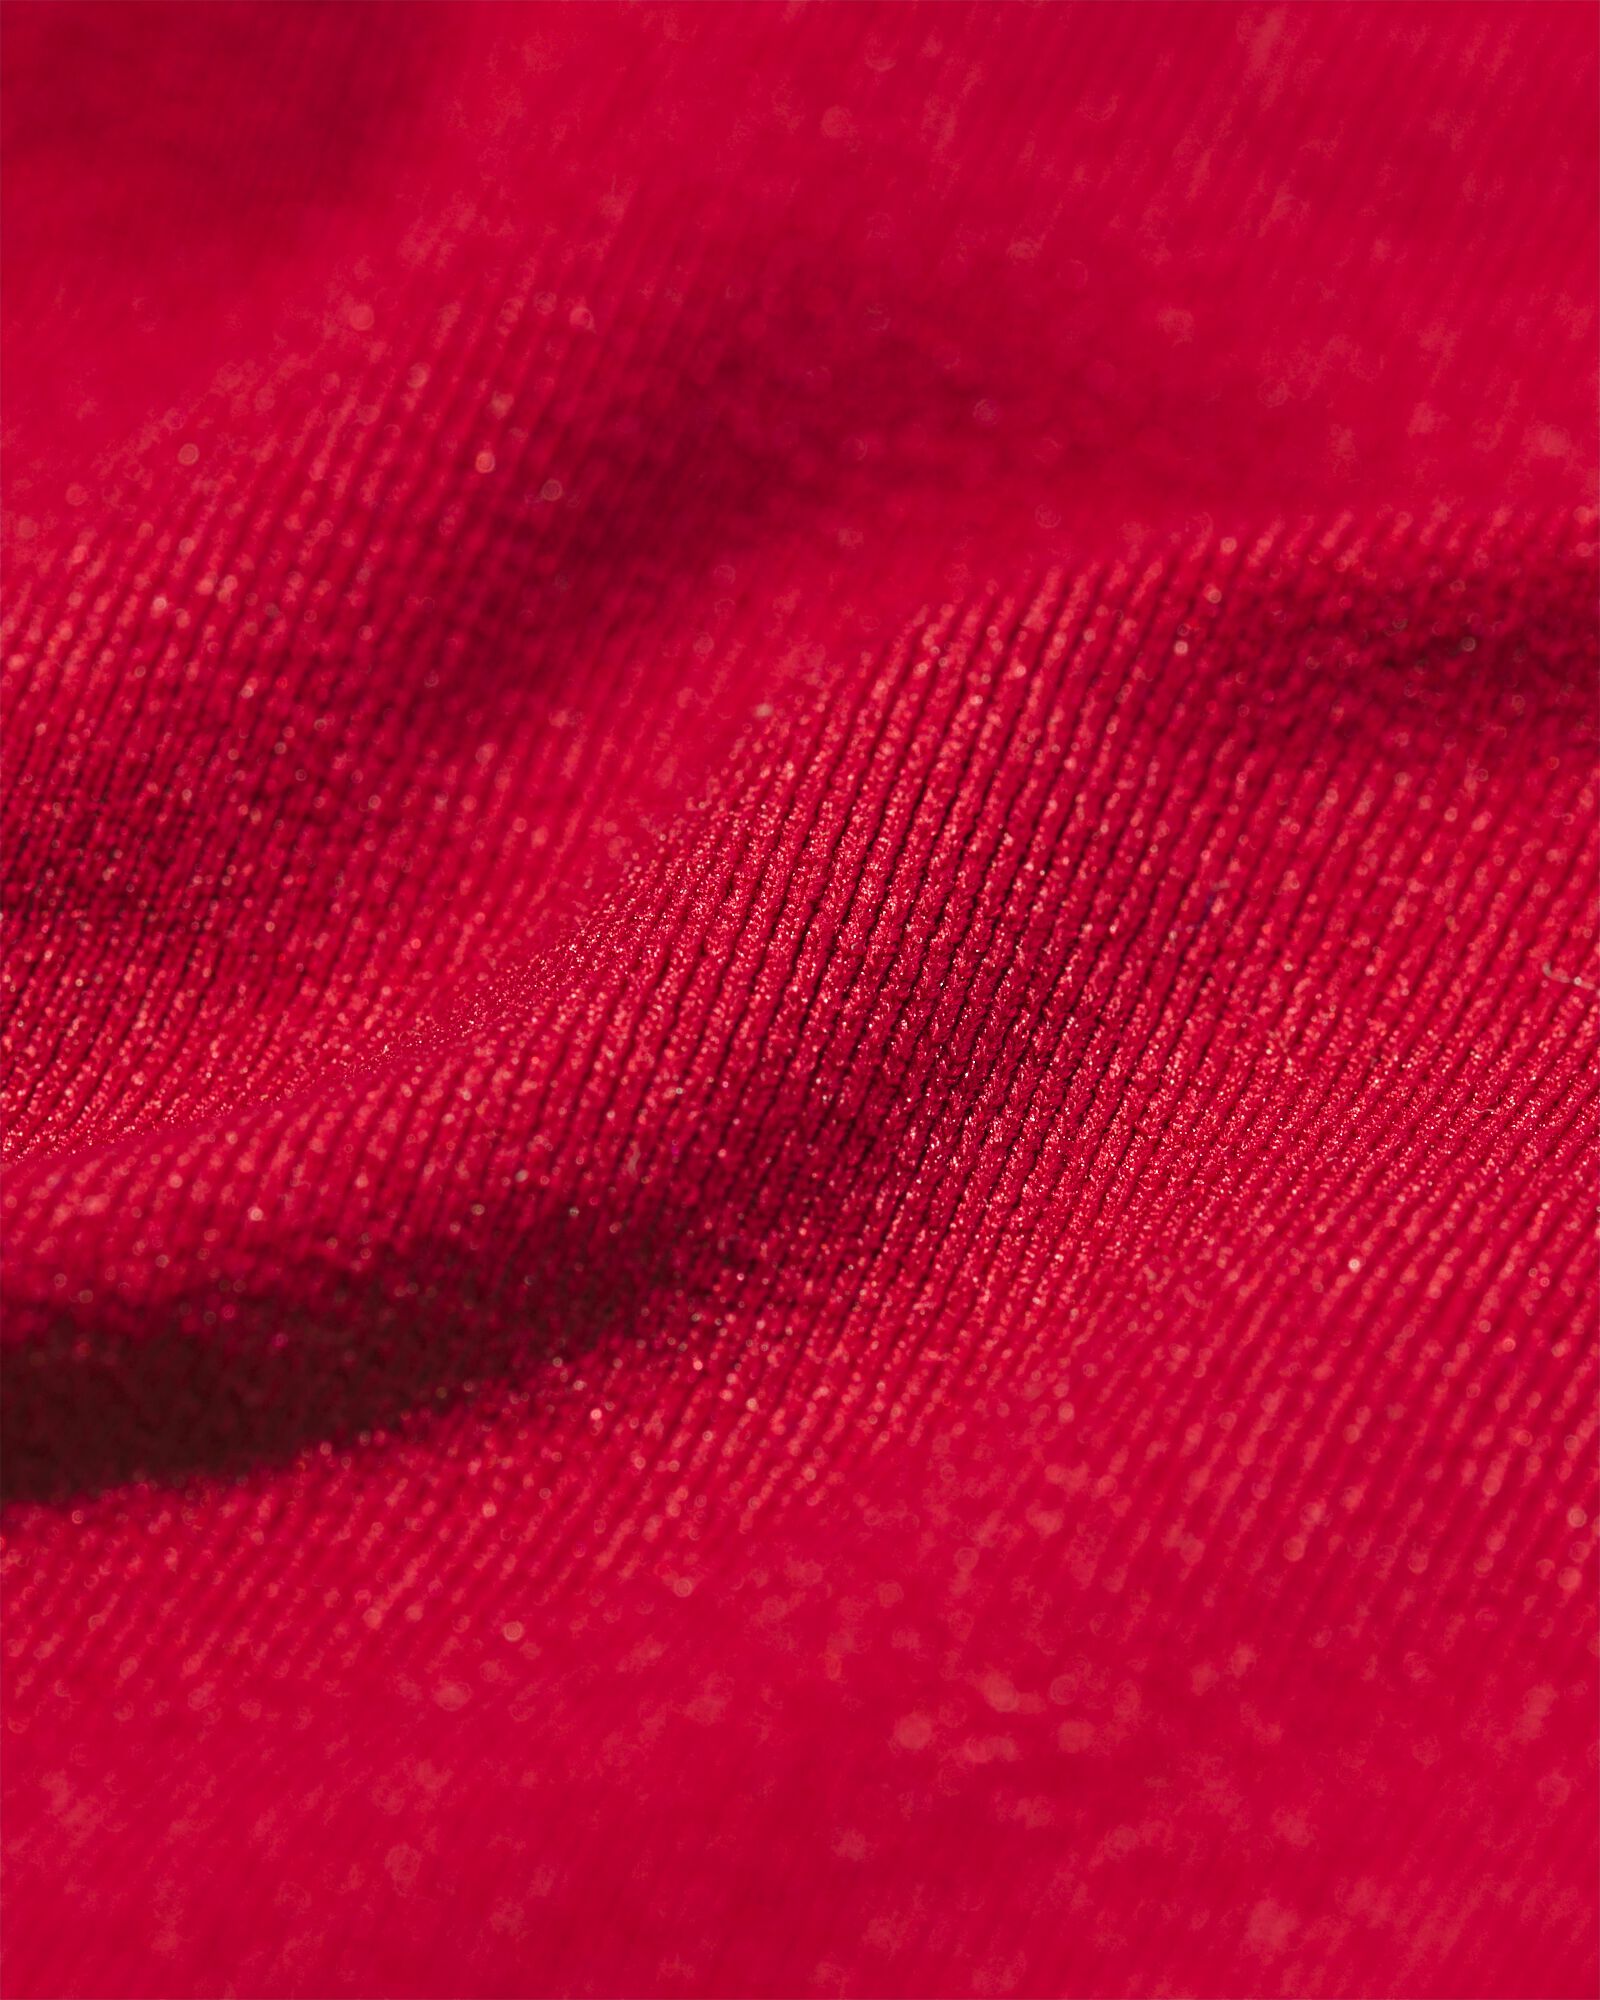 string femme sans coutures en micro rouge XL - 19650379 - HEMA